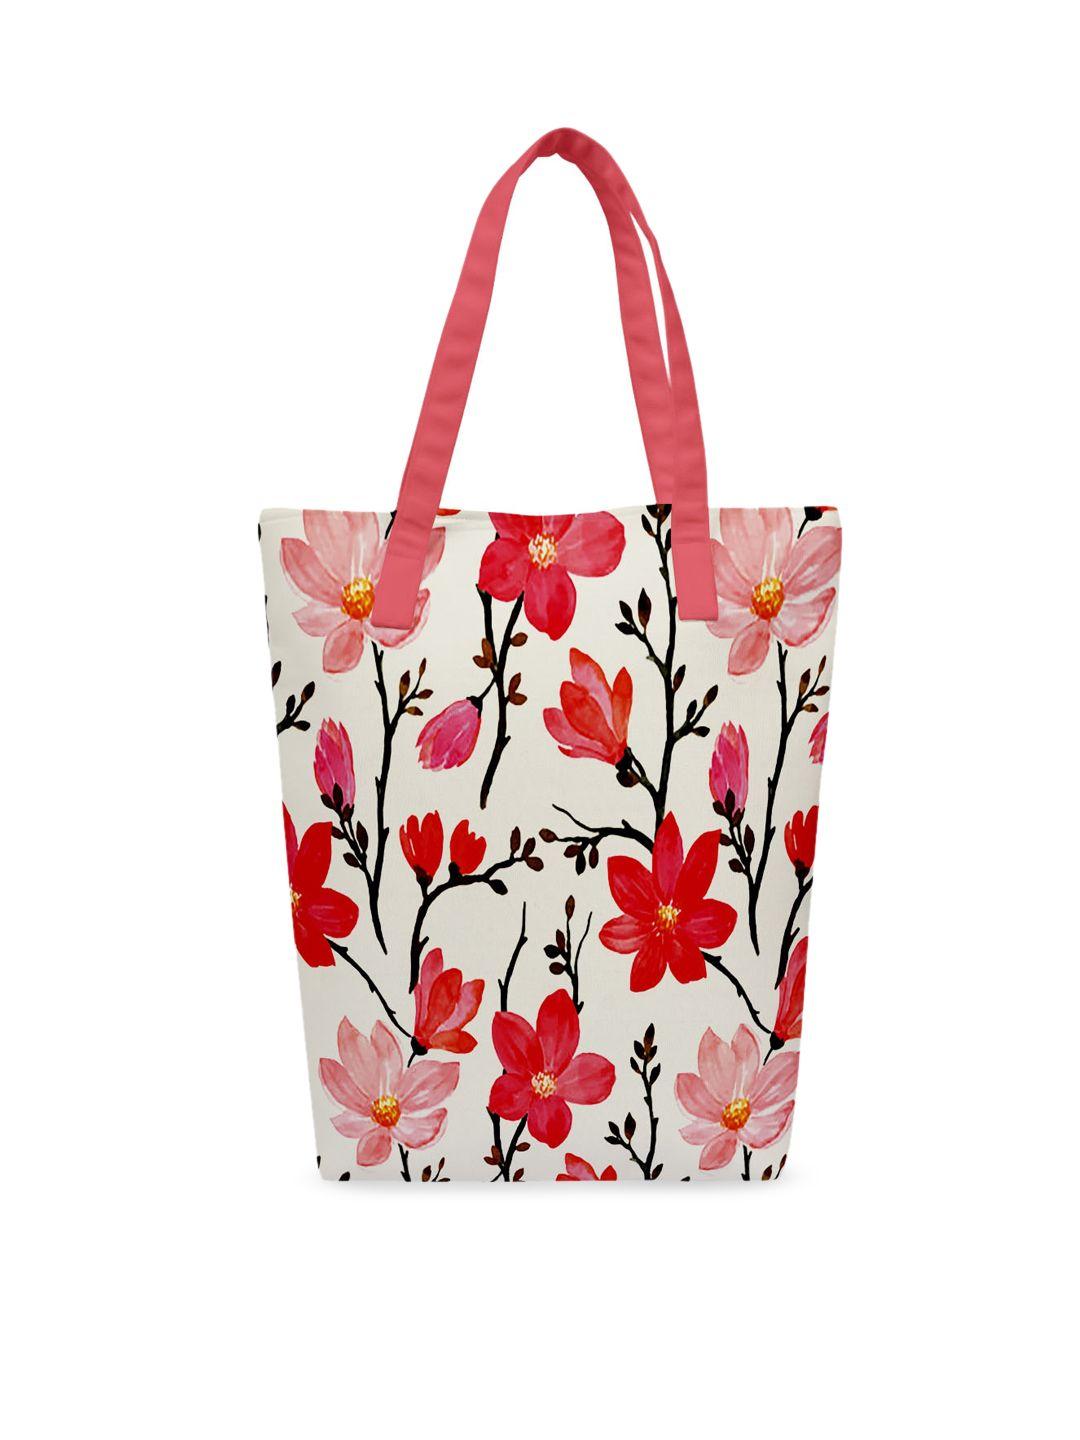 crazy corner pink floral printed shopper tote bag